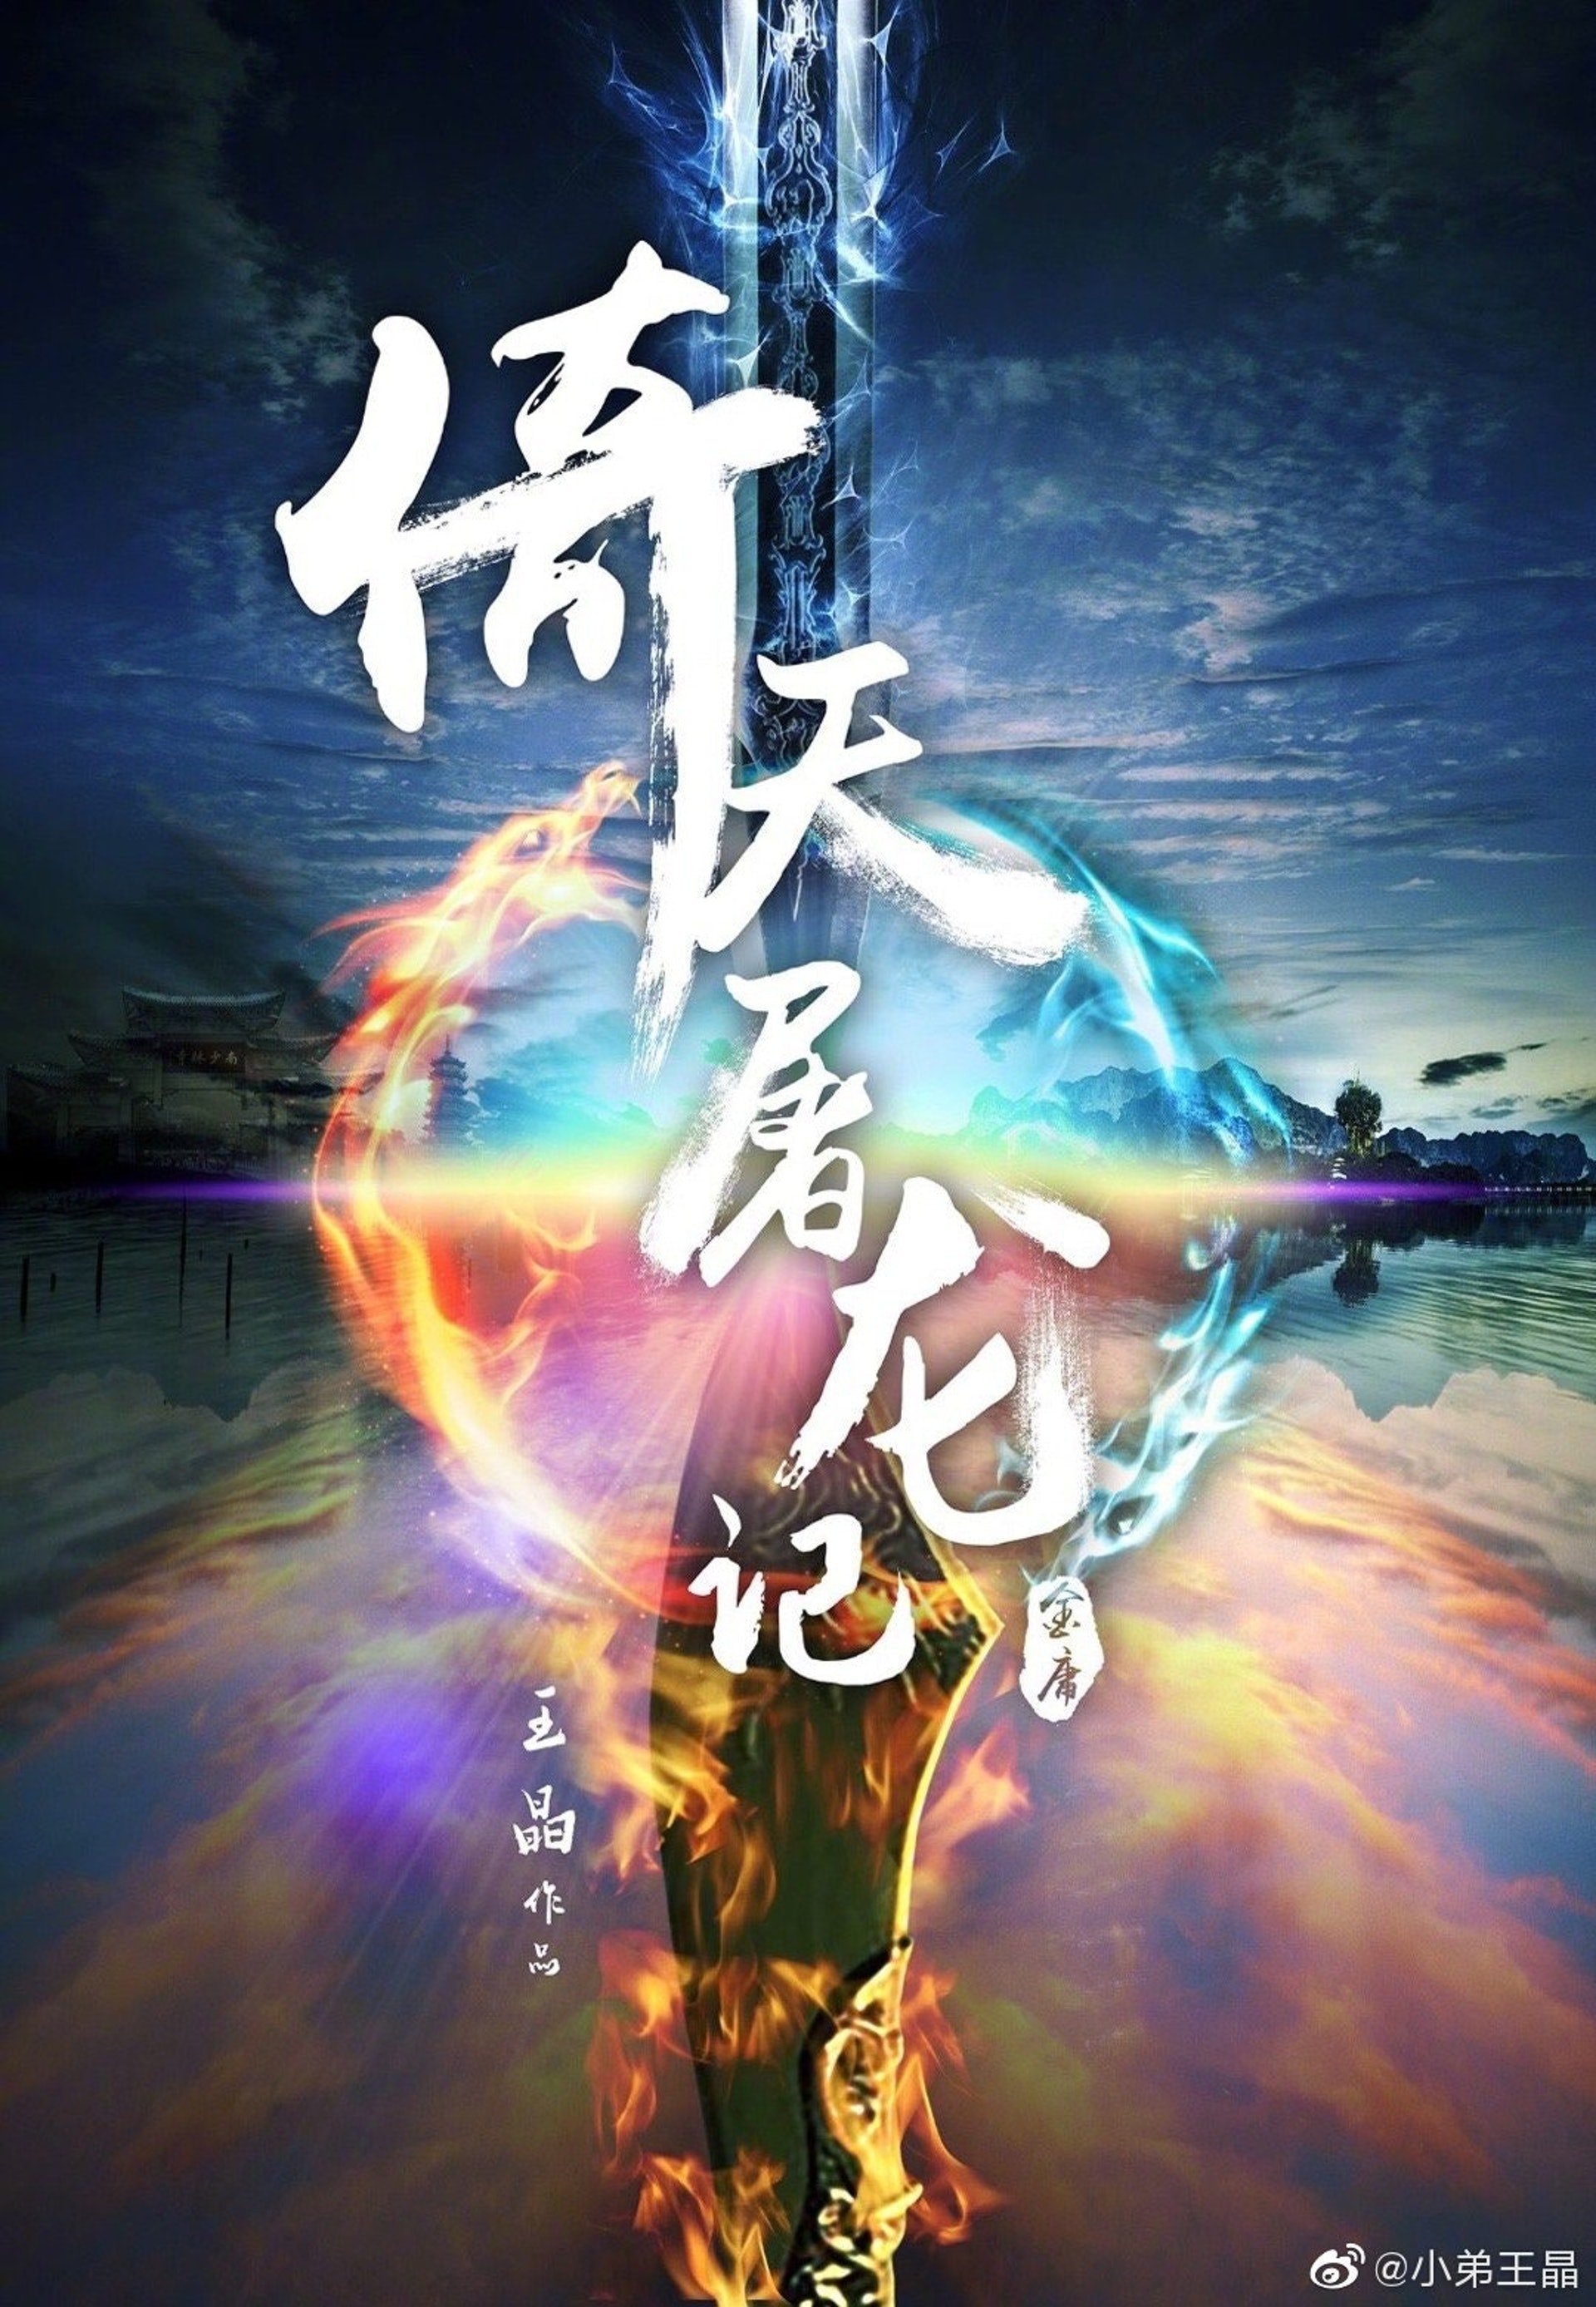 倚天屠龍記之九陽神功電影圖片 - poster_1614559346.jpg